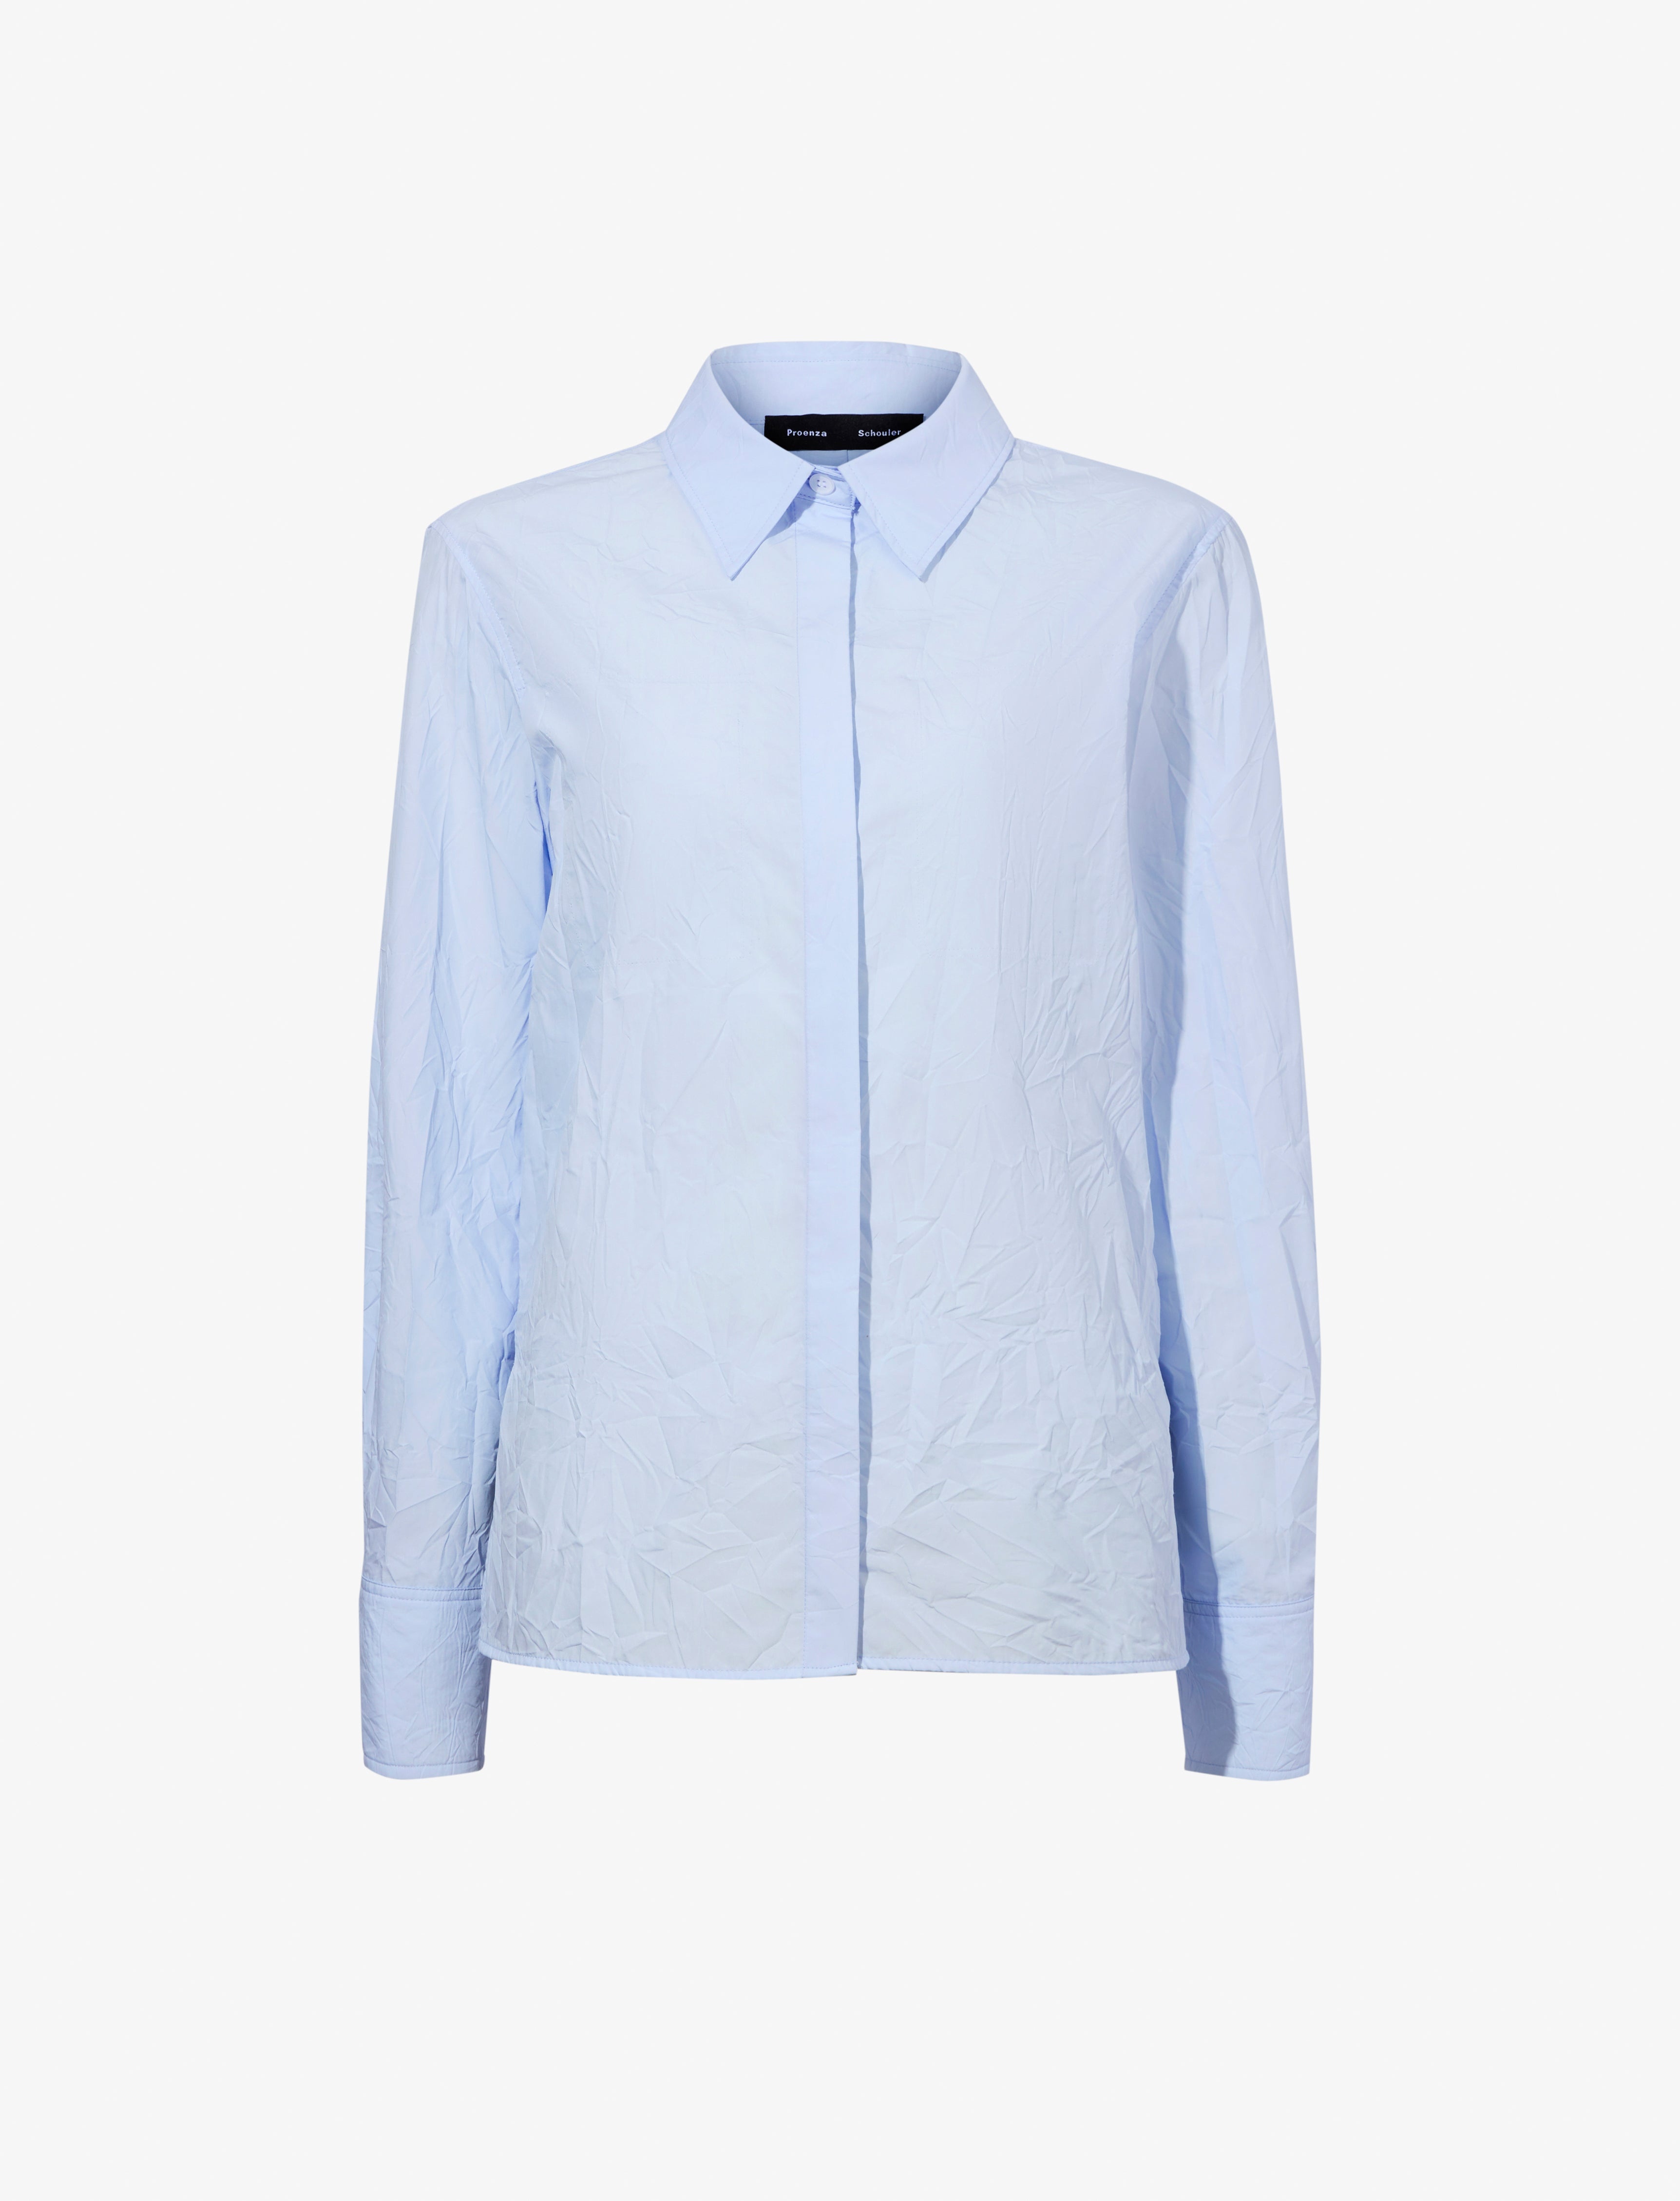 Allen Shirt in Crinkled Cotton Gabardine - 1